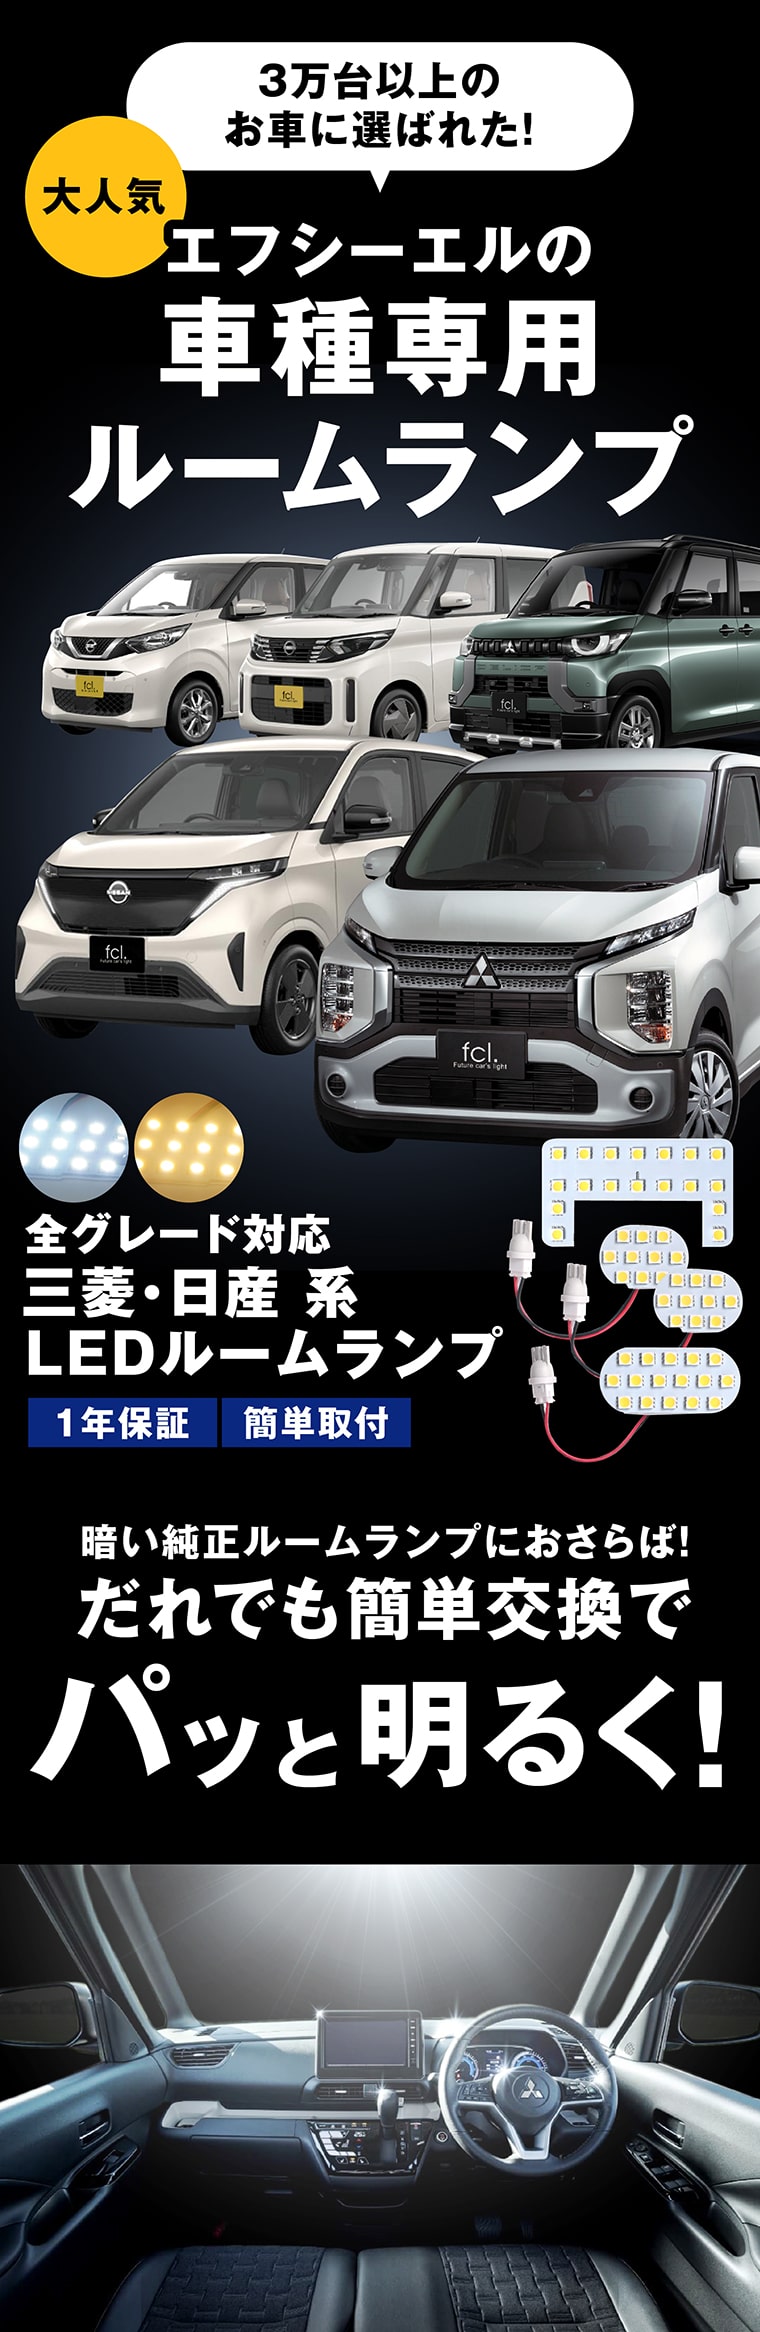 エフシーエル車種専用LEDルームランプ 三菱 日産 全グレード対応